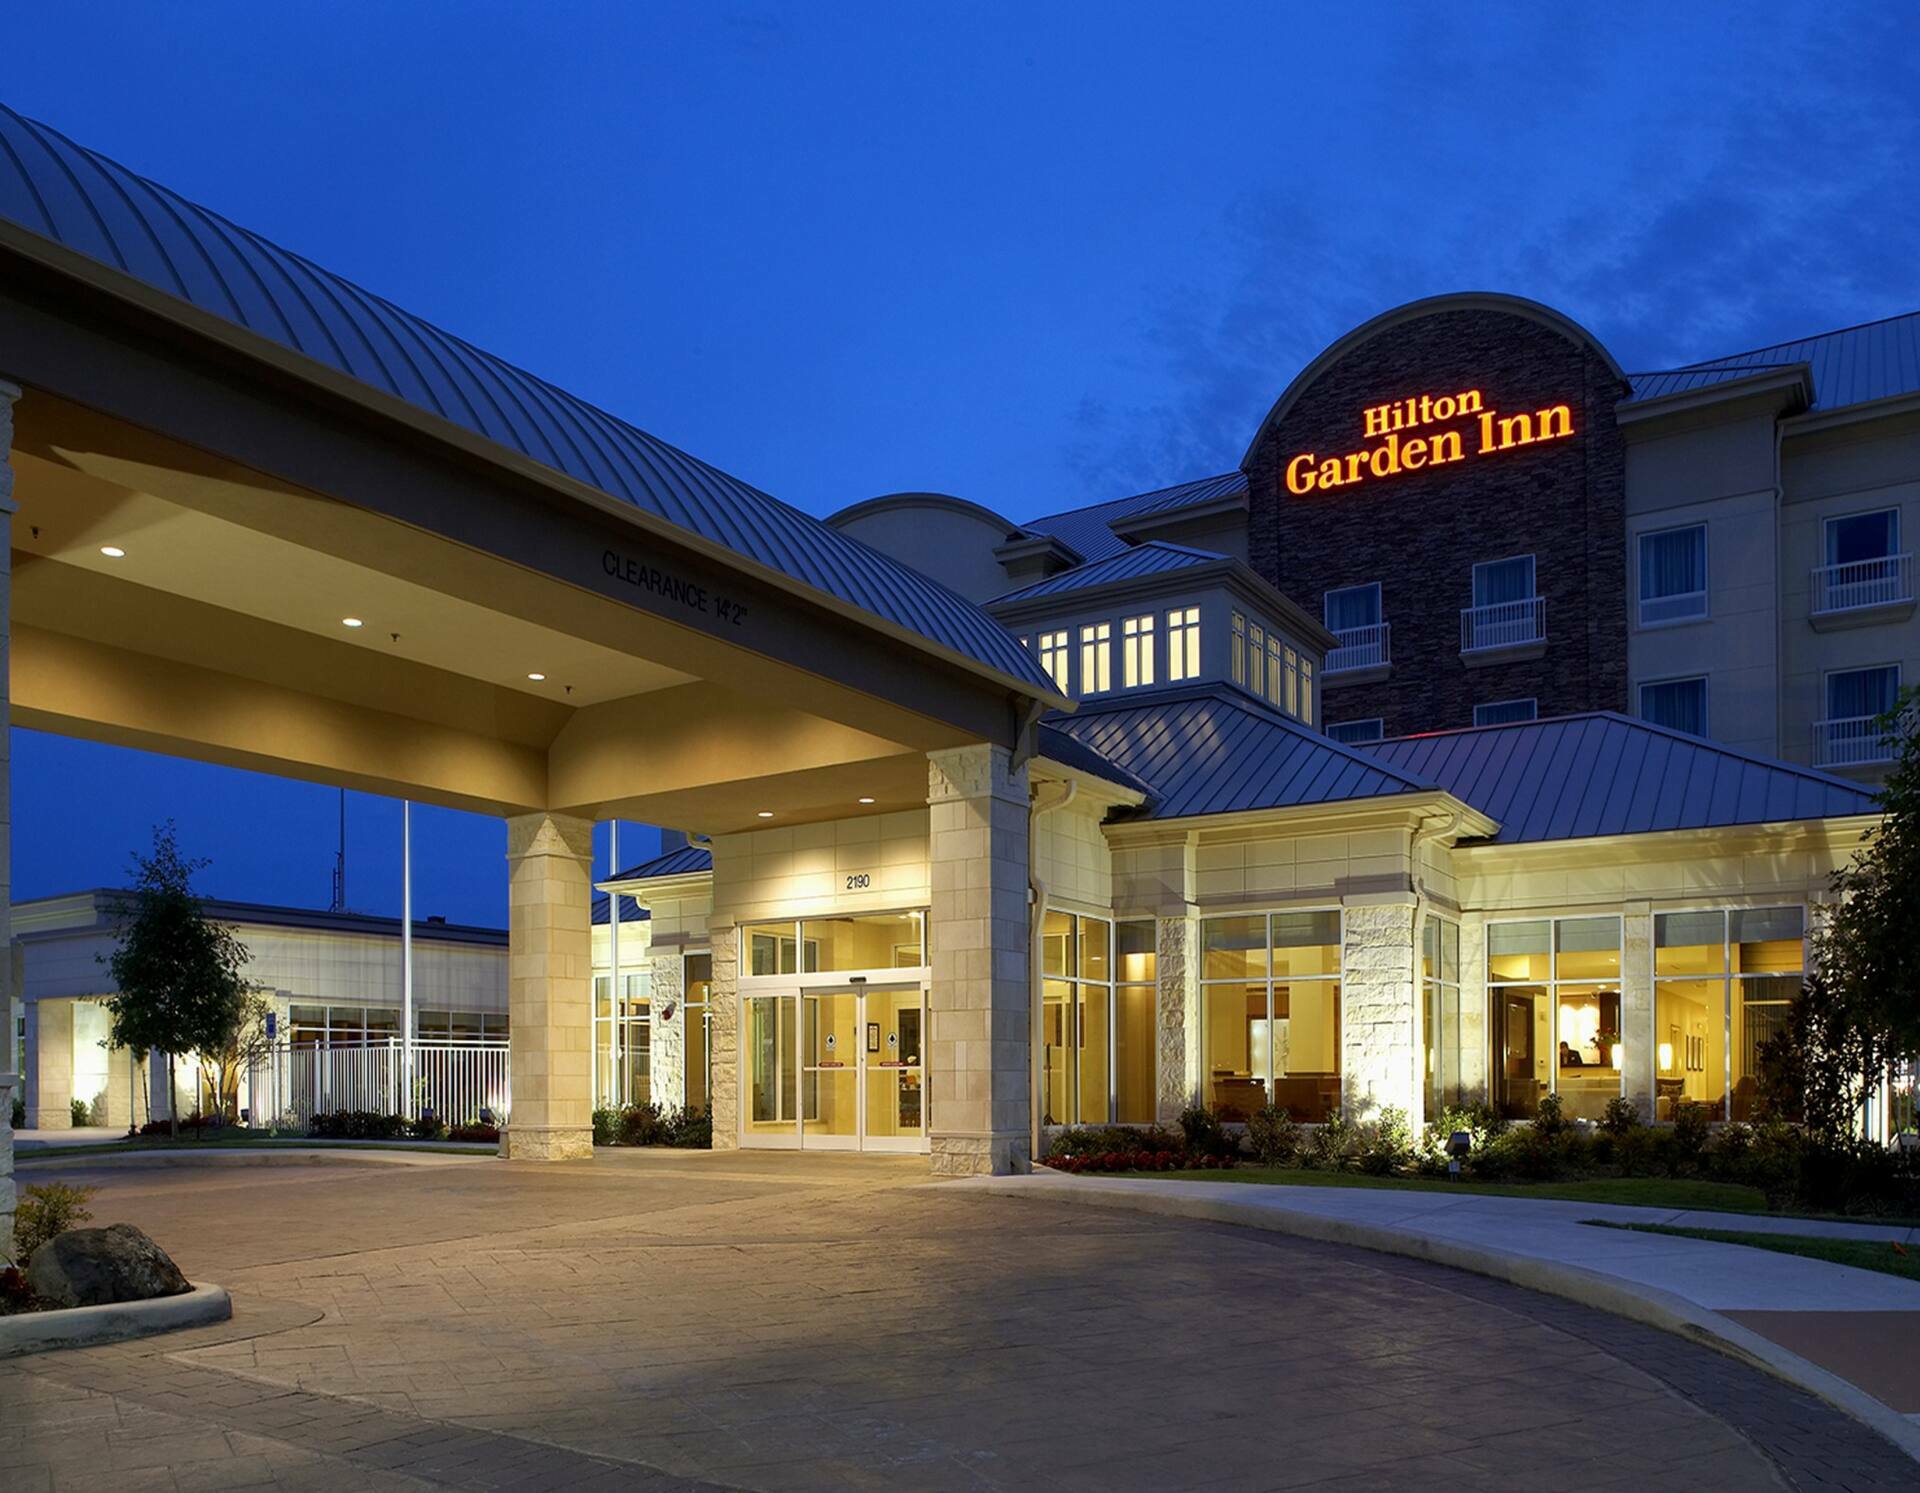 Photo of Hilton Garden Inn Dallas/Arlington, Arlington, TX